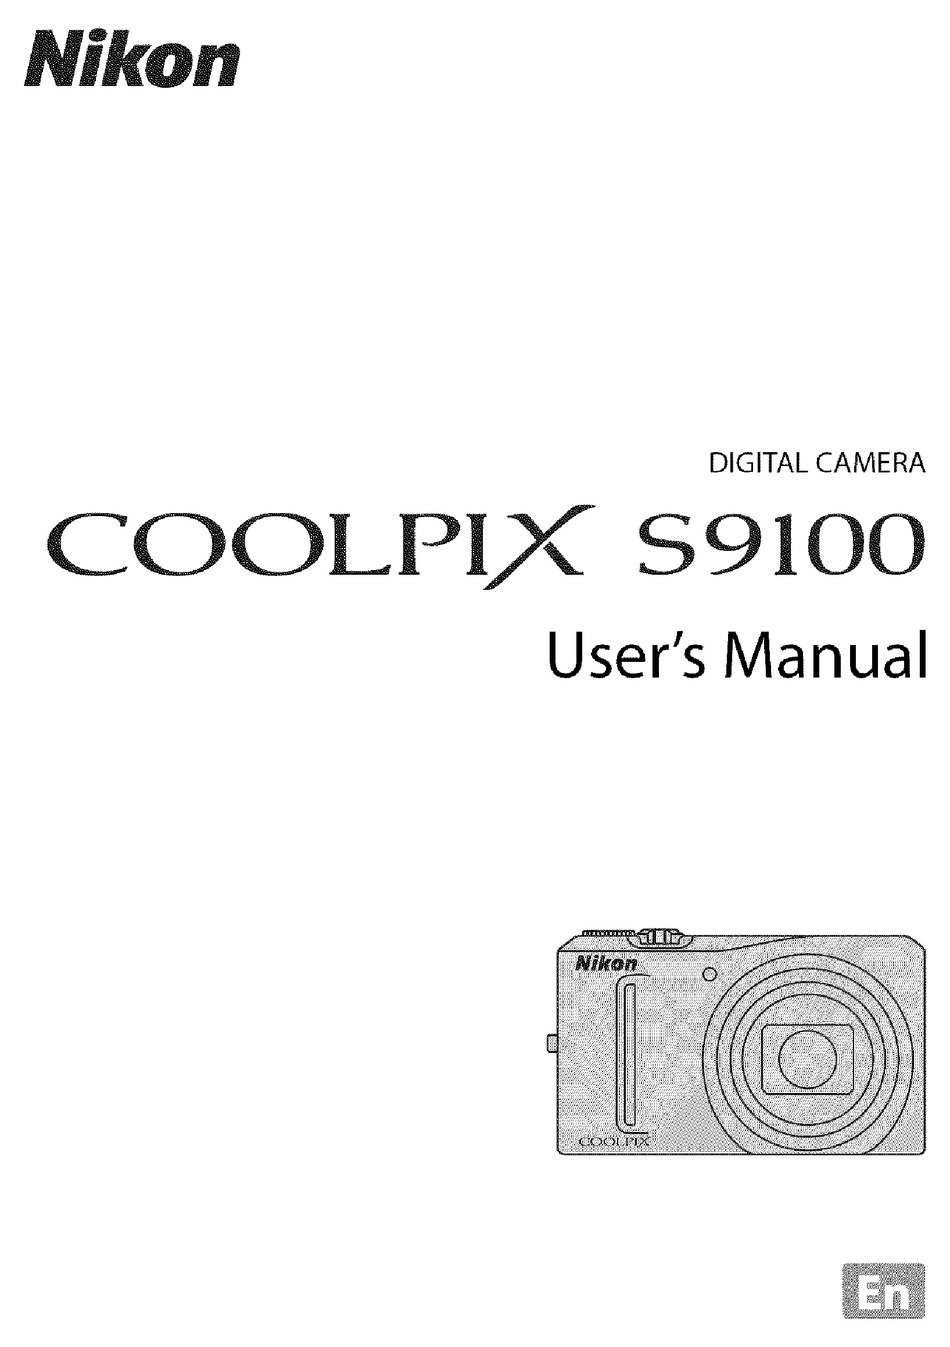 NIKON COOLPIX S9100 USER MANUAL Pdf Download | ManualsLib